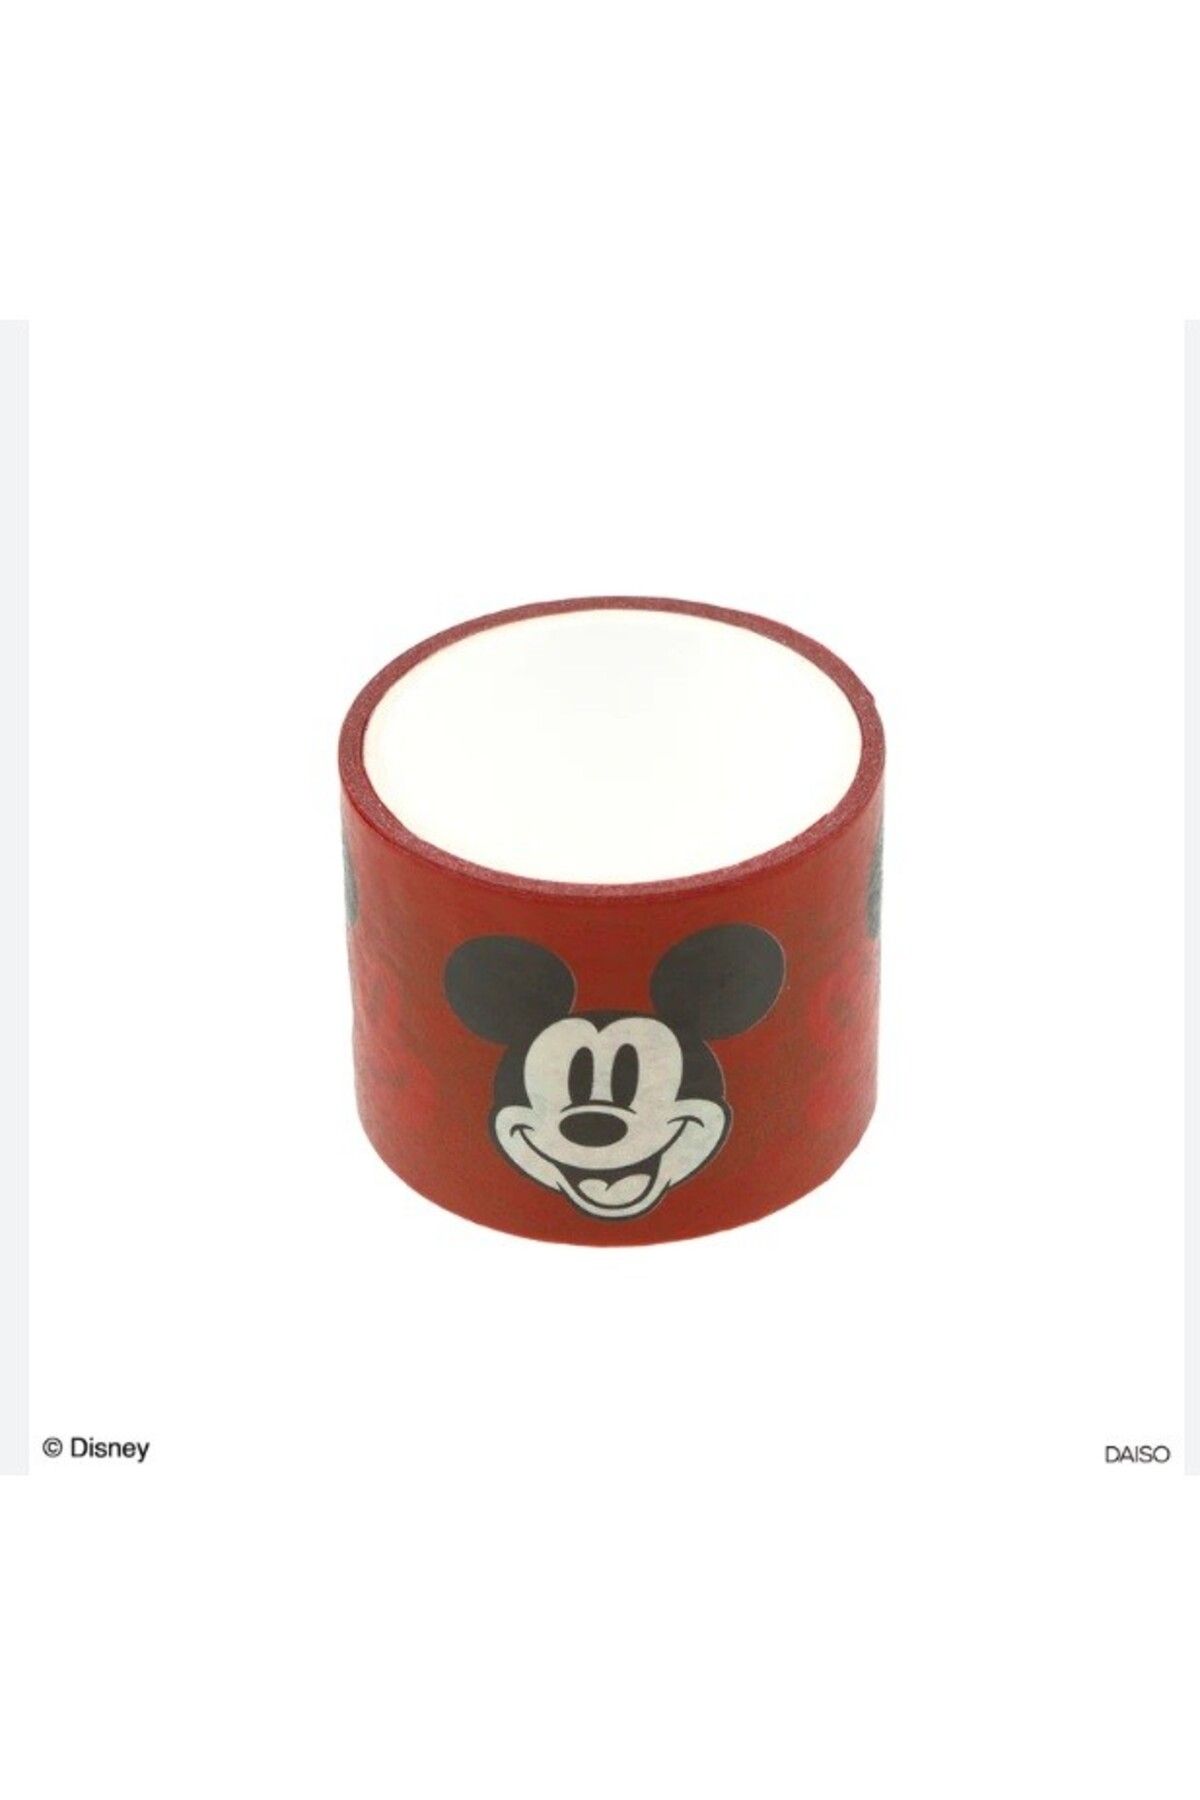 DİSNEY Lisanslı Maskeleme Bandı Mickey Mouse Model 3cm * 2,5 m